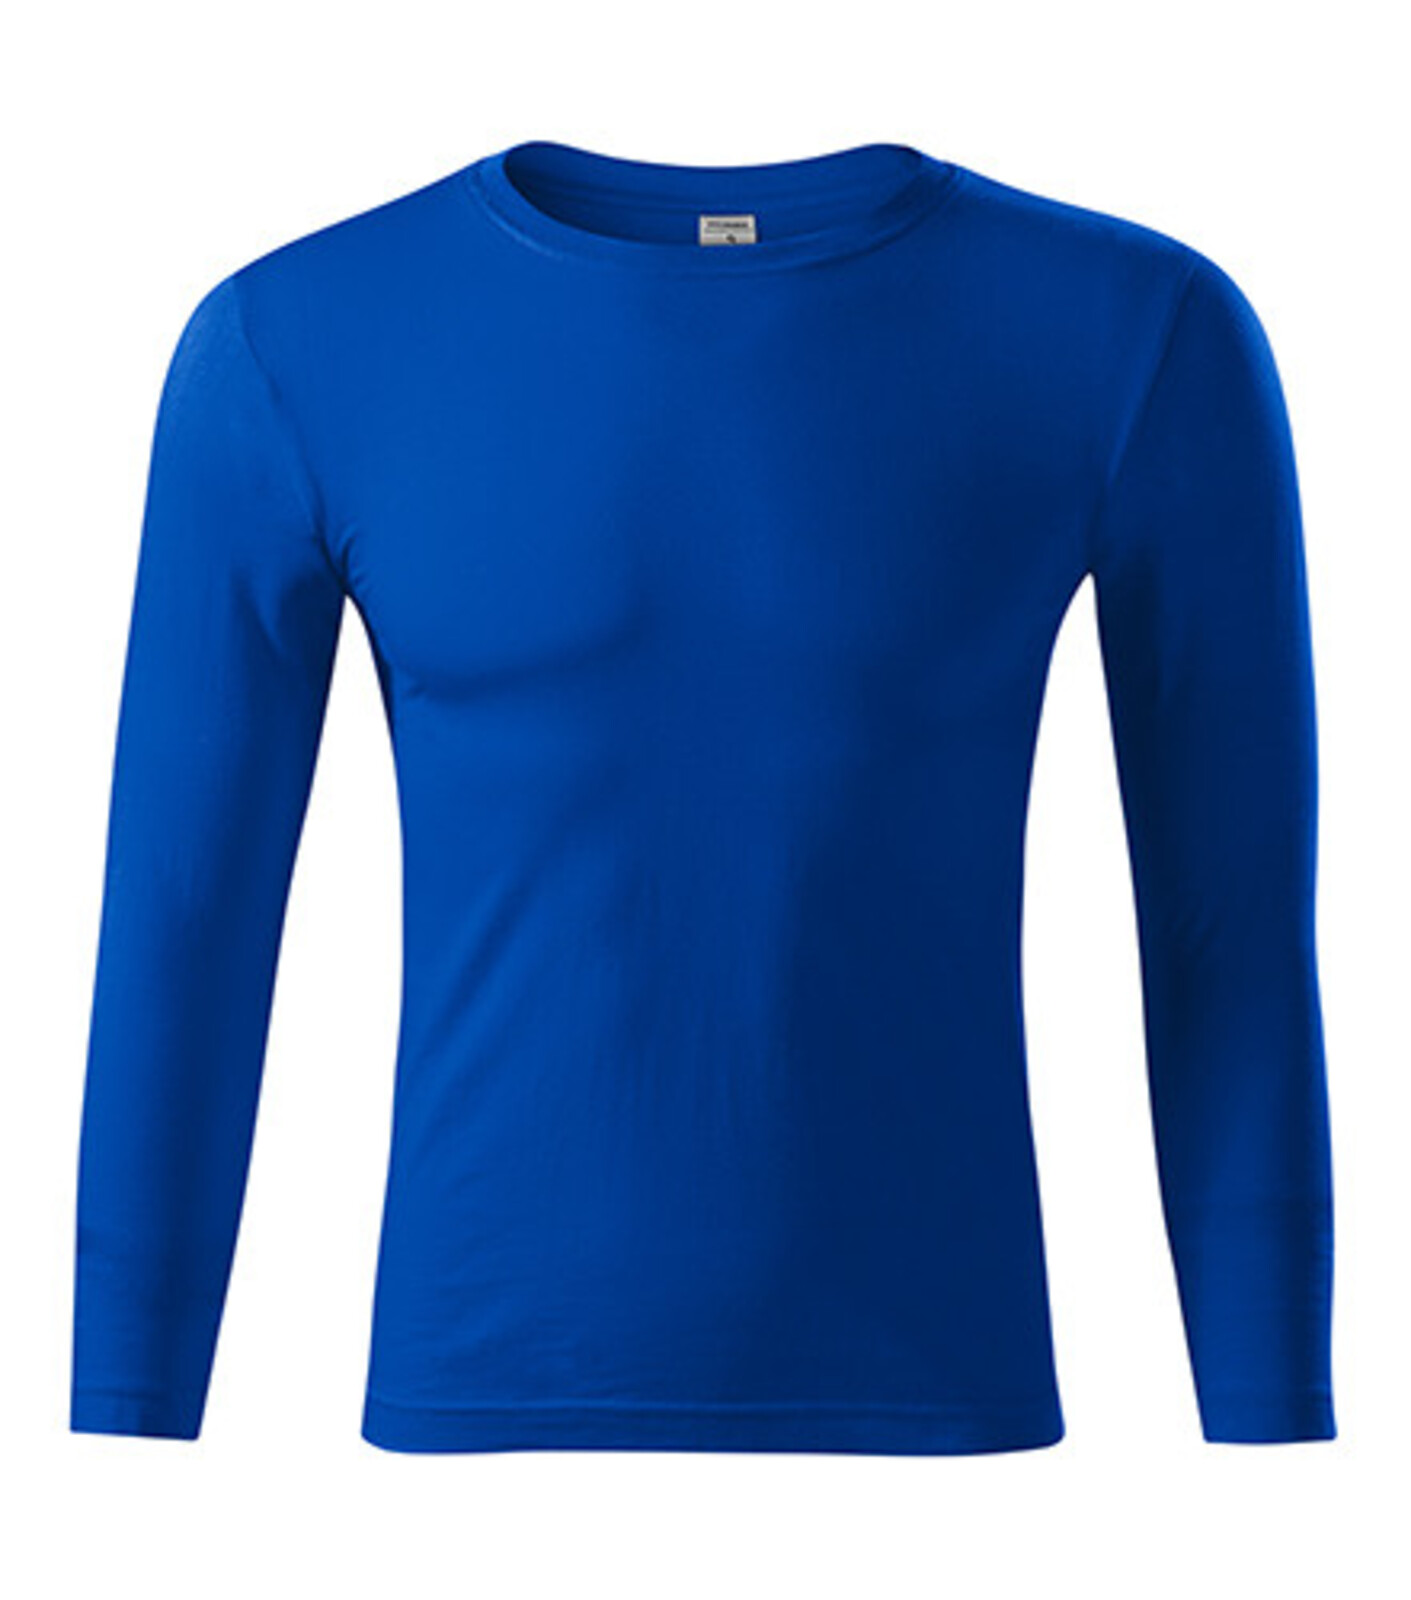 Unisex tričko s dlhým rukávom Progress LS P75 - veľkosť: XL, farba: kráľovská modrá